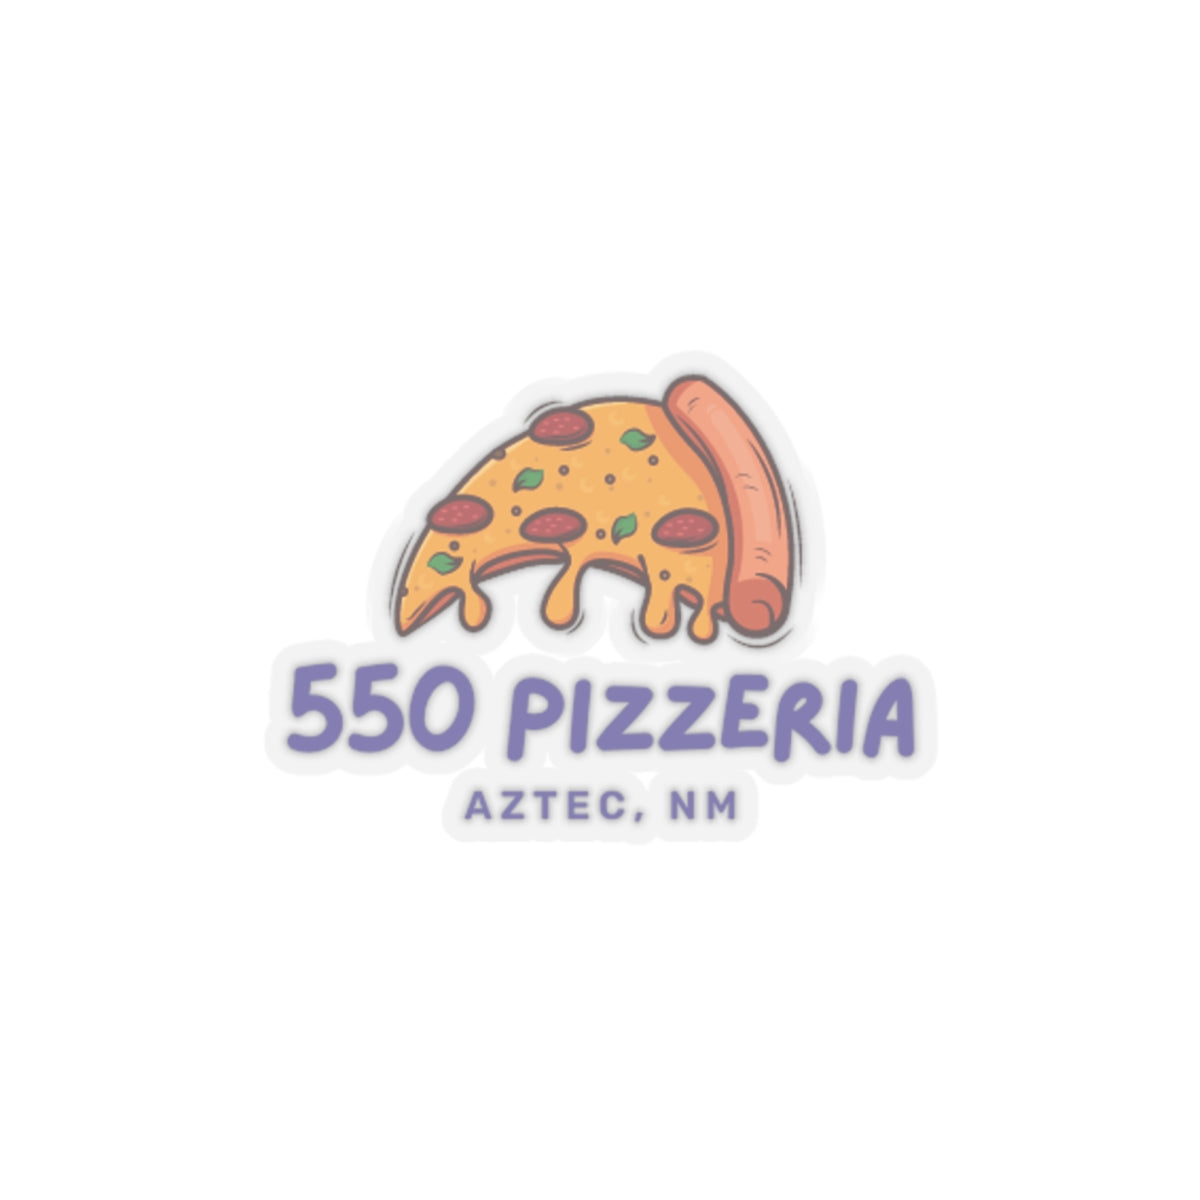 550 Pizzeria Kiss-Cut Stickers